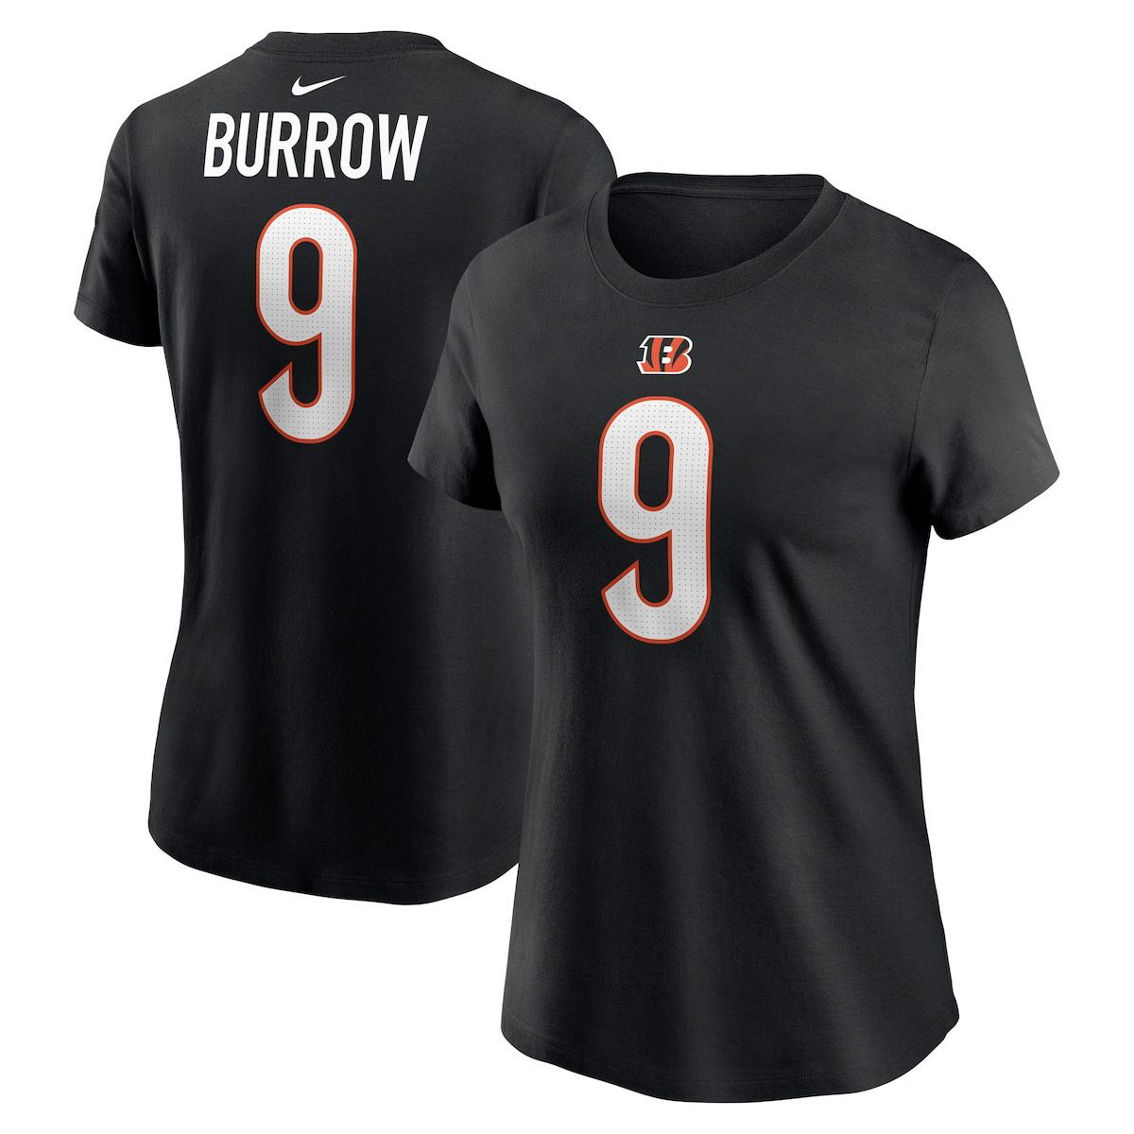 Nike Women's Joe Burrow Black Cincinnati Bengals Player Name & Number T-Shirt - Image 2 of 4